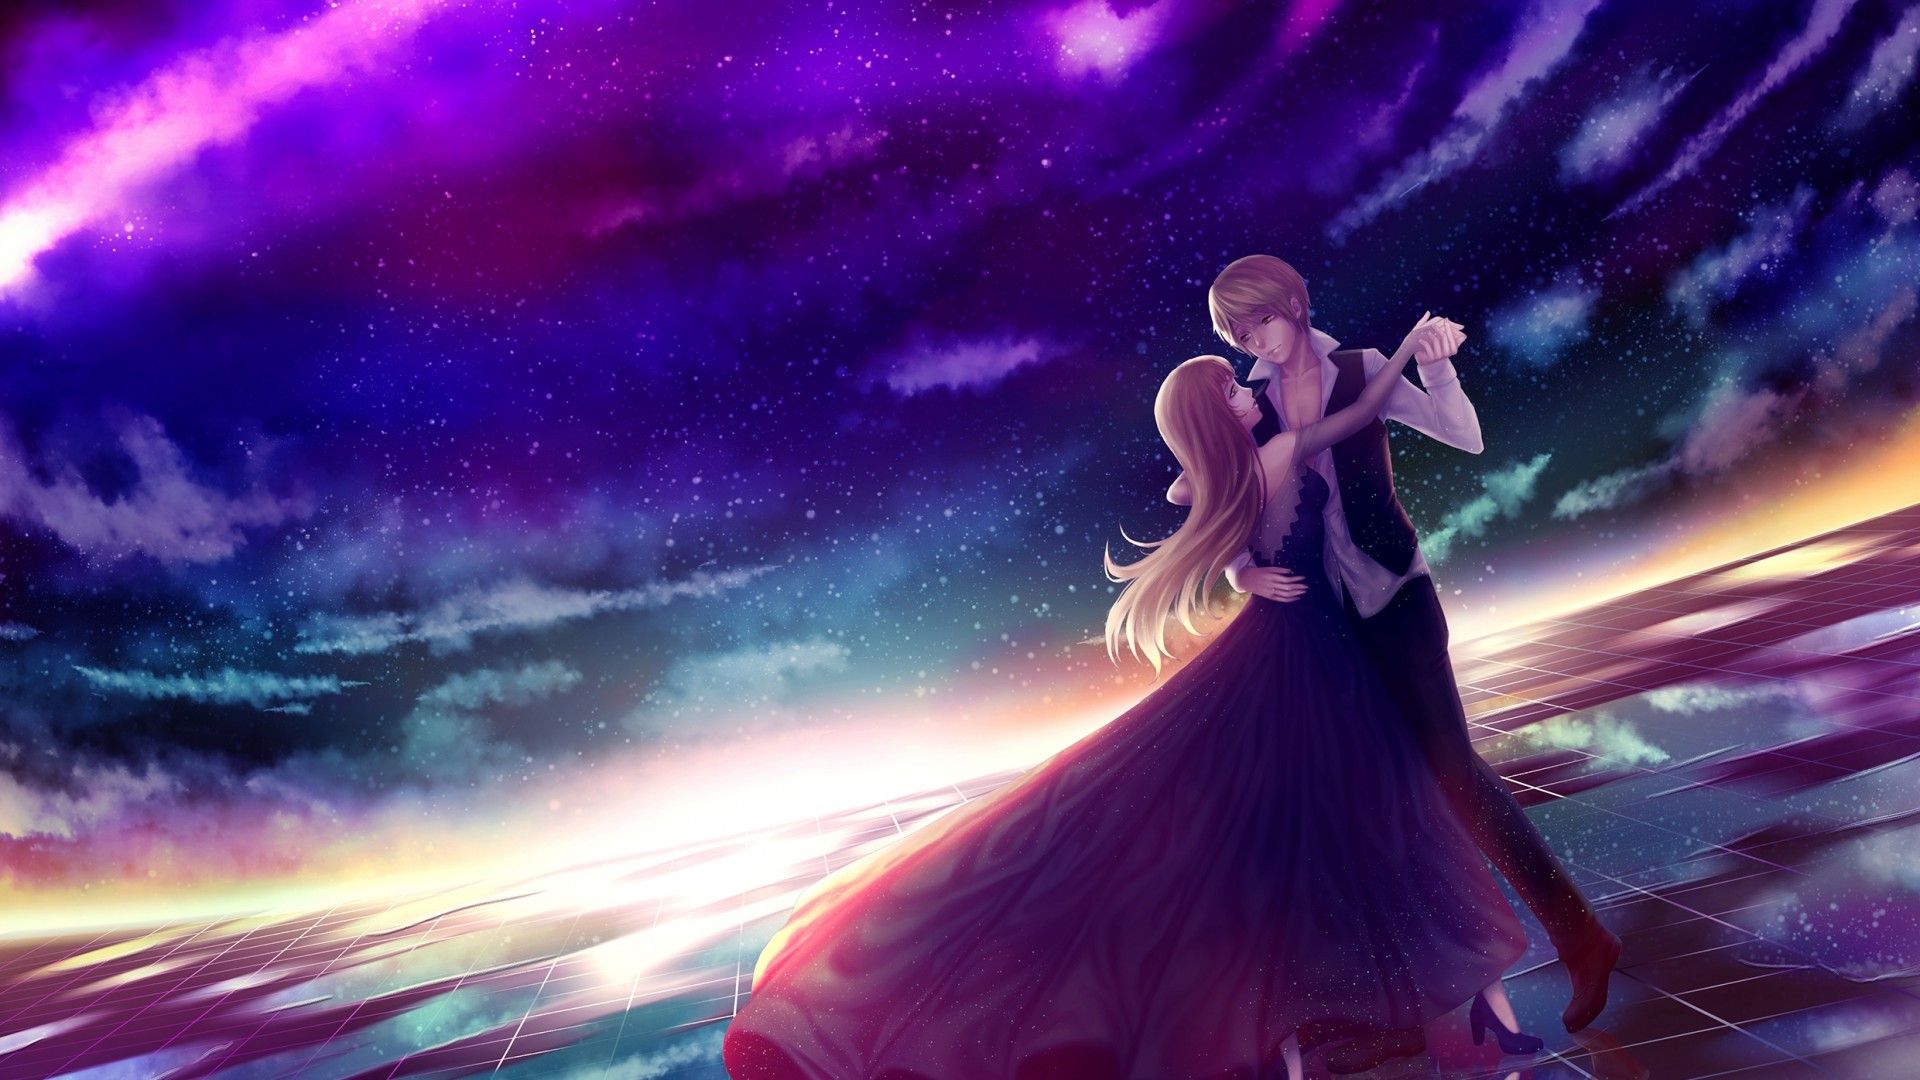 Hình ảnh Anime tình yêu đẹp lung linh